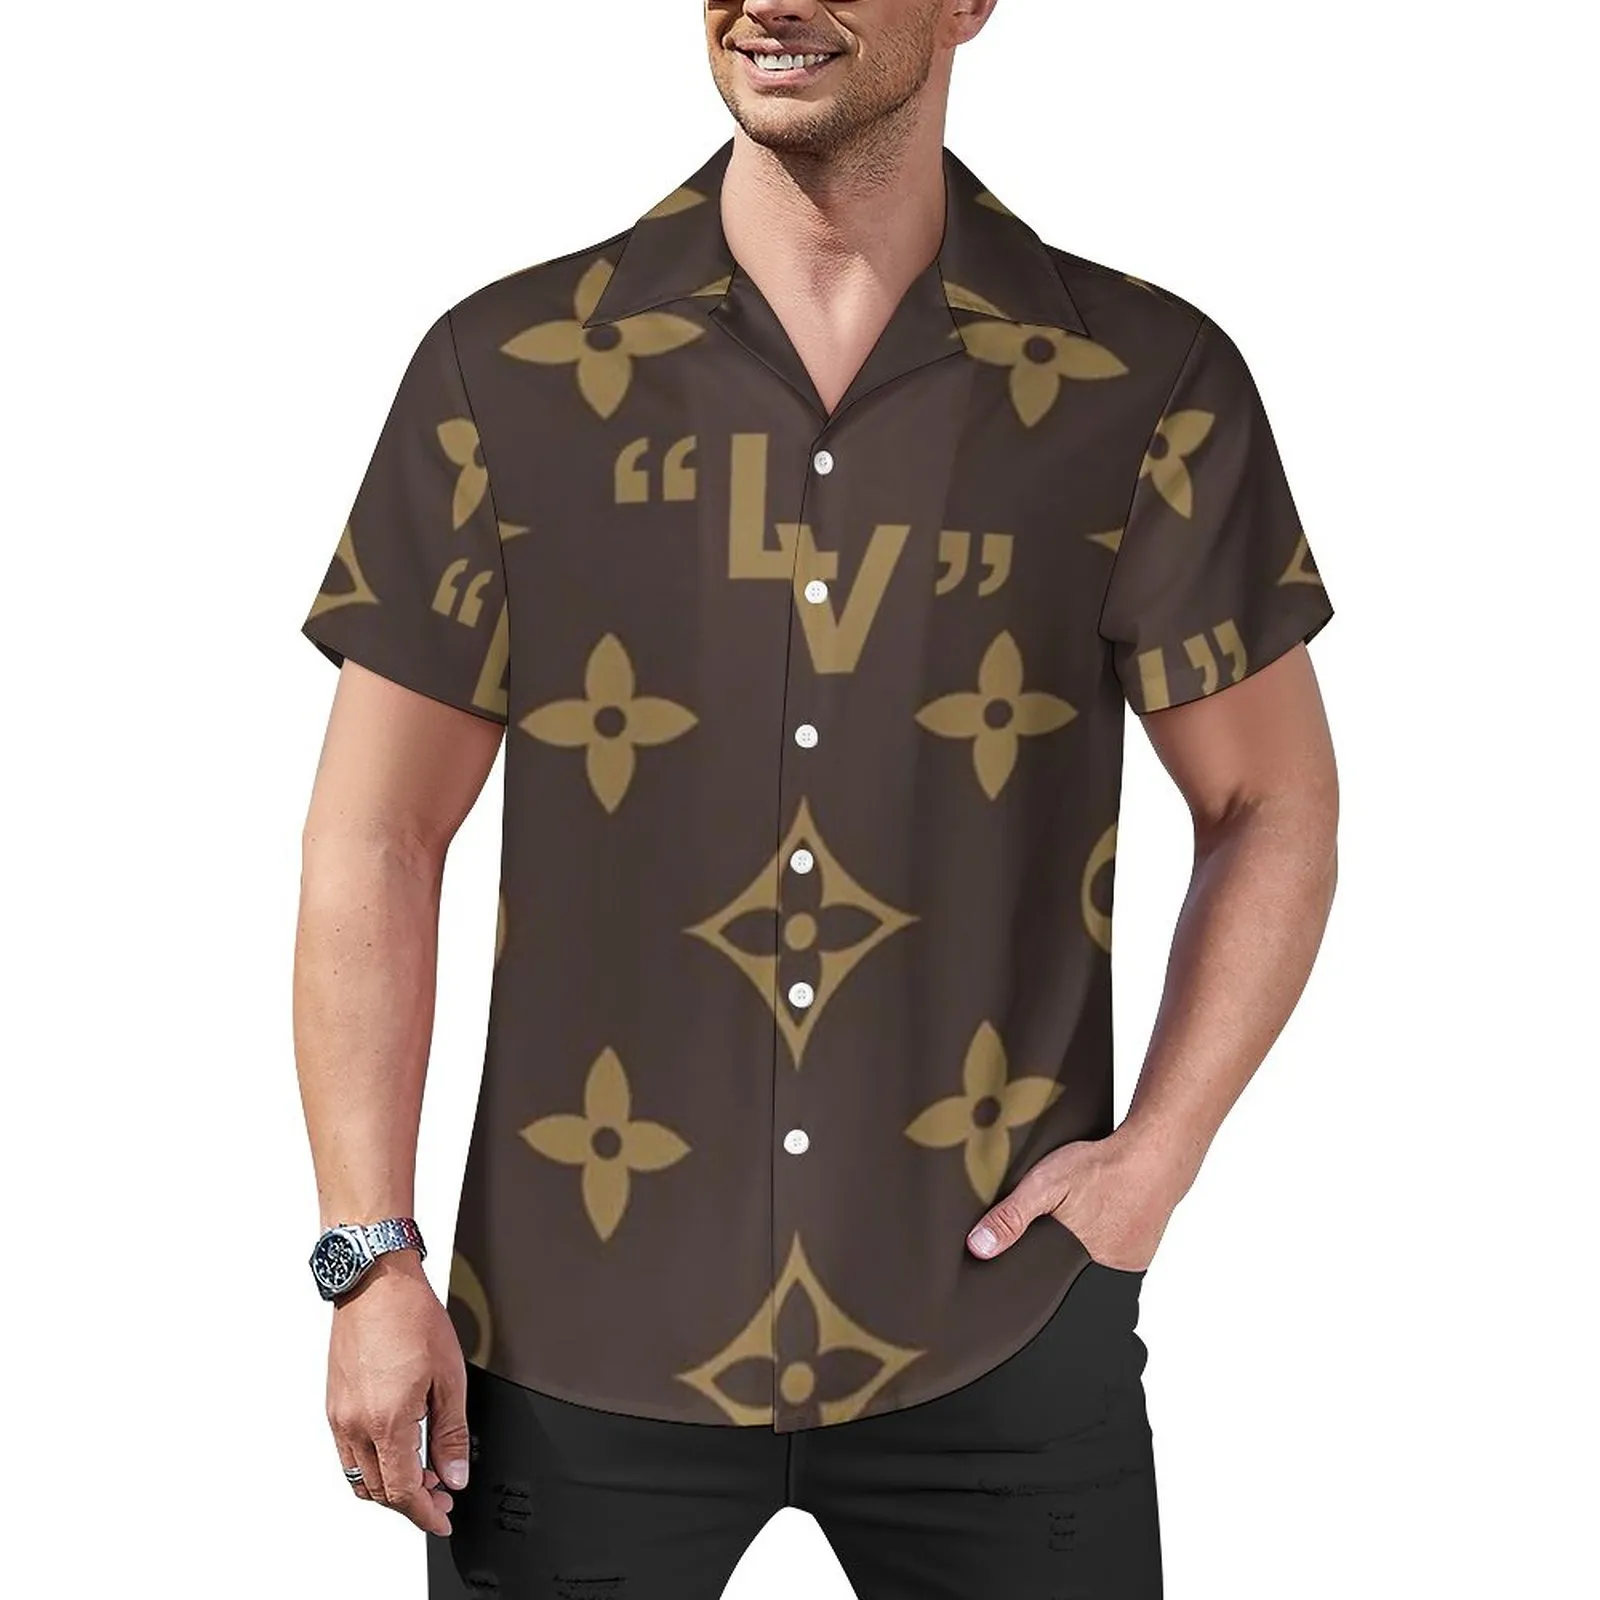 Letnie męskie damskie T Shirt nowe modne koszulki z literami oddychające męskie topy z krótkim rękawem z kwiatami koszulki hurtownia cs158